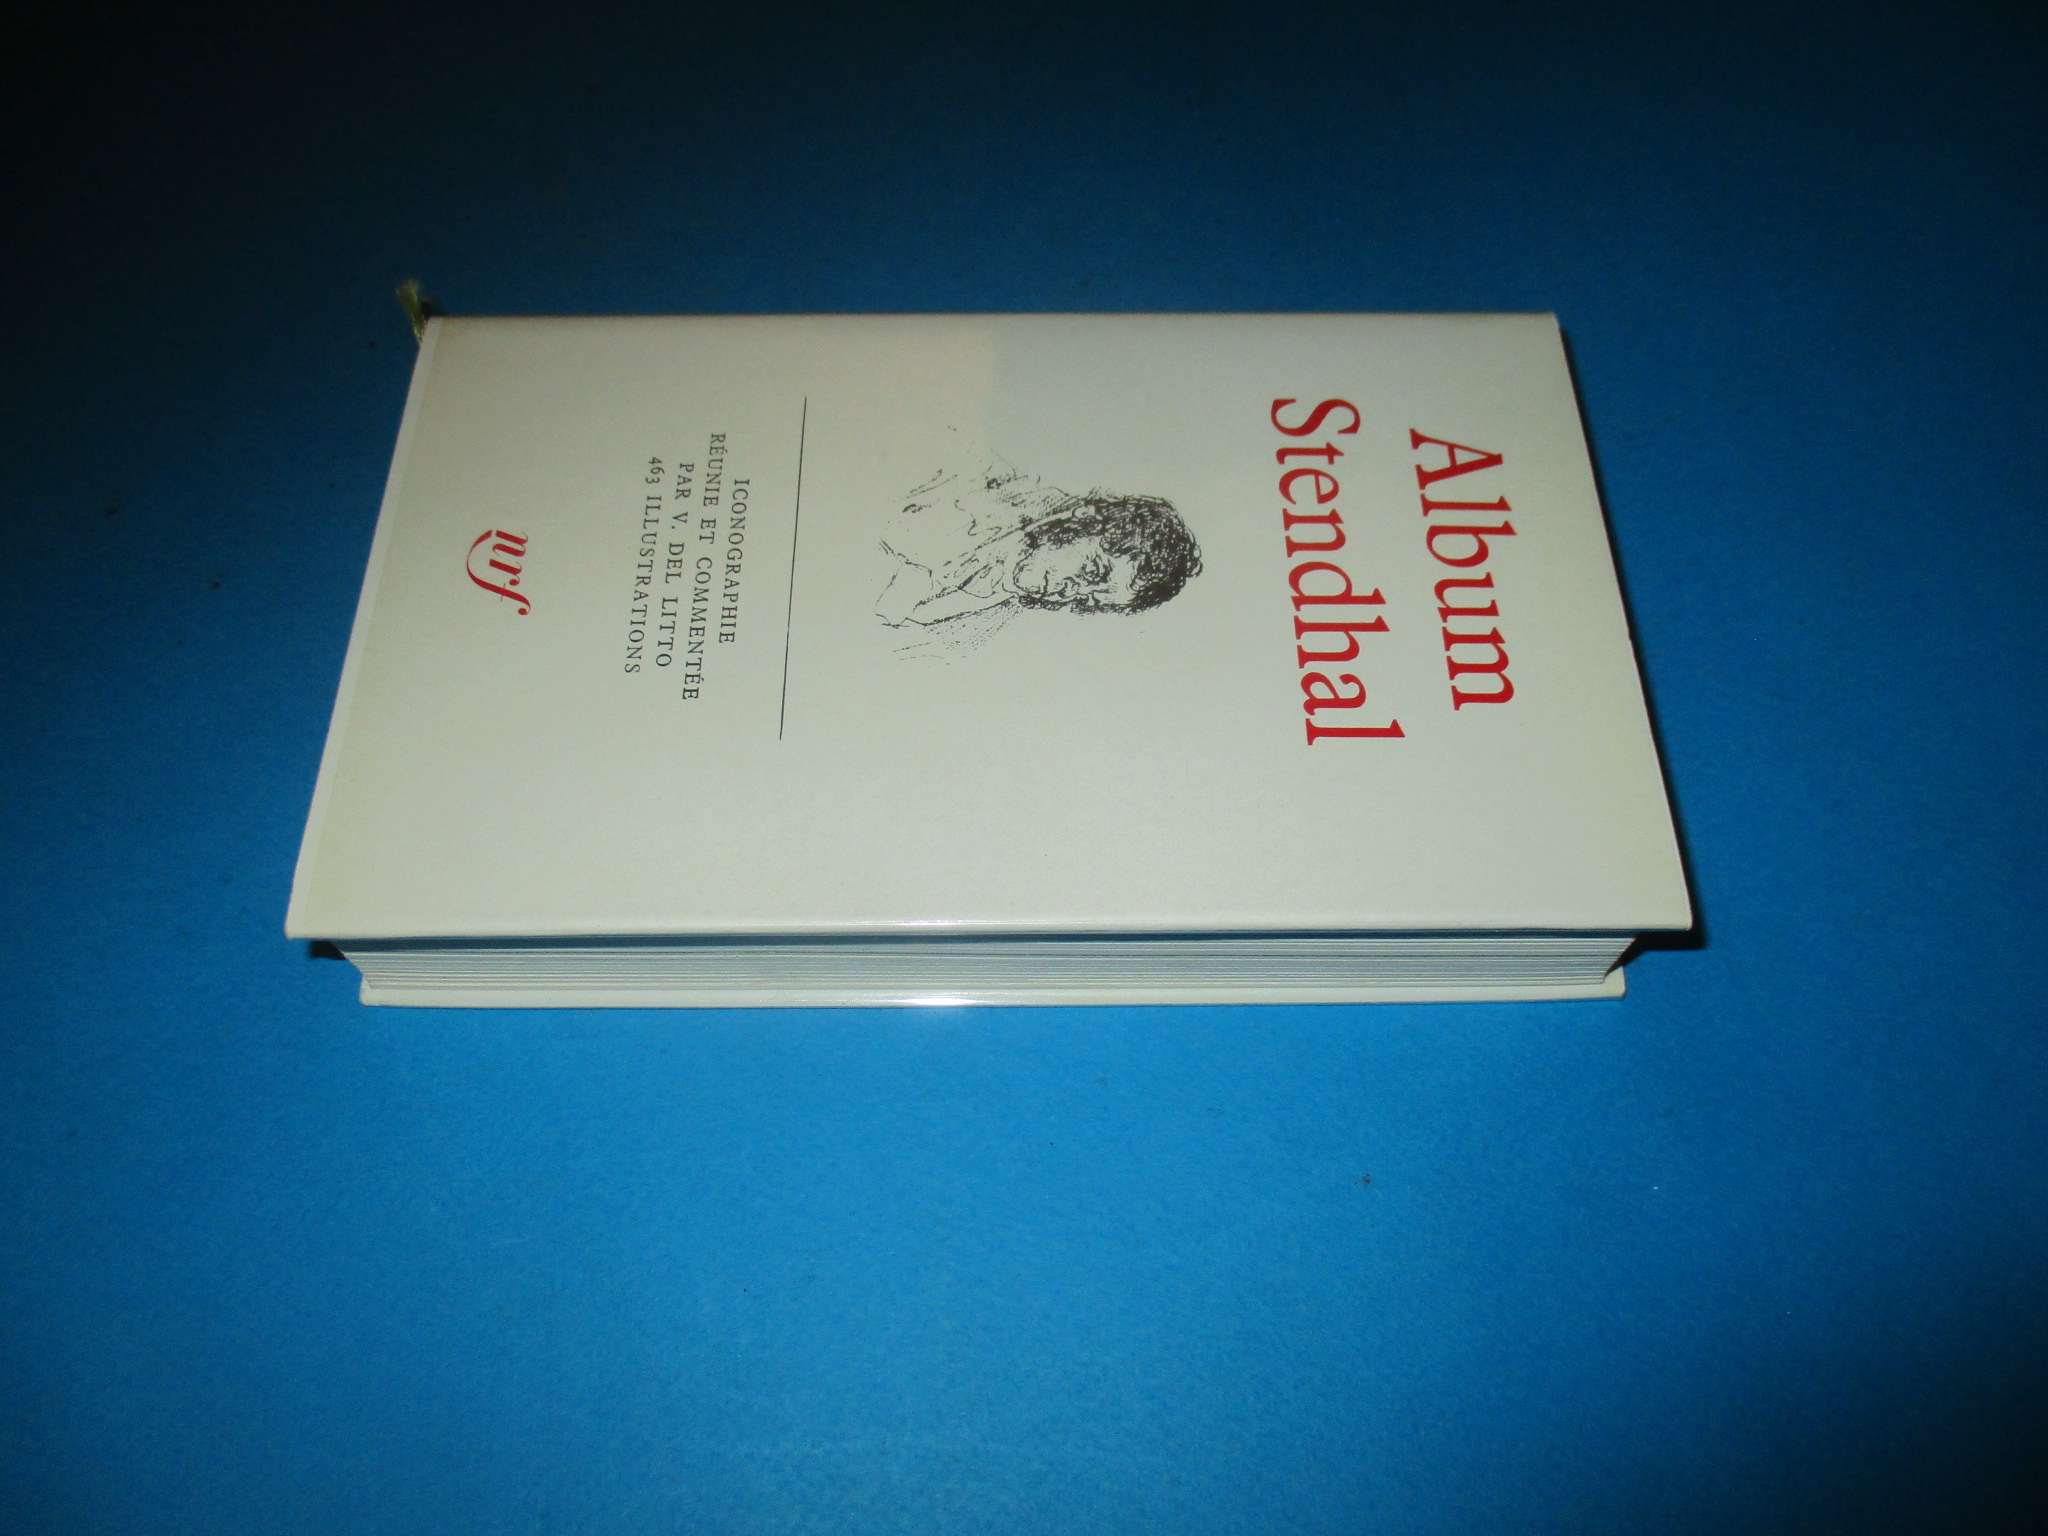 Album Stendhal, jaquette & rhodoid, Album Pléiade 1966